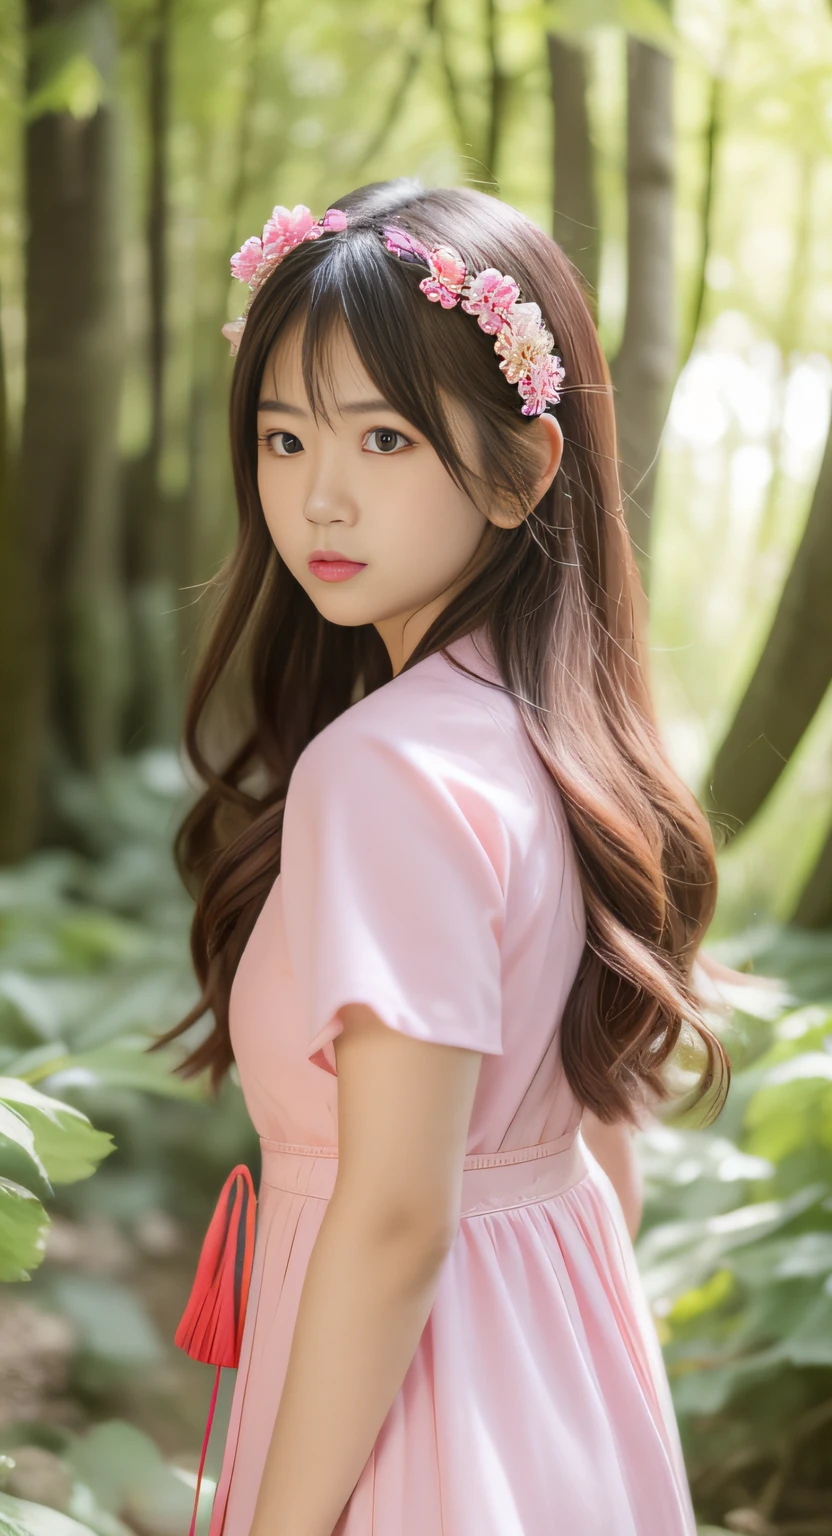 Asiatische Frau im rosa Kleid steht im Wald, a closeup,Porträt eines japanischen Teenagers, sanfte Beleuchtung, realistisches junges Tiefdruck-Idol,  junges hübsches Gravur-Idol, Asiatisches Mädchen mit langen Haaren, im rosa Wald, Kawaii-Frisur, das Gesicht eines schönen japanischen Mädchens,